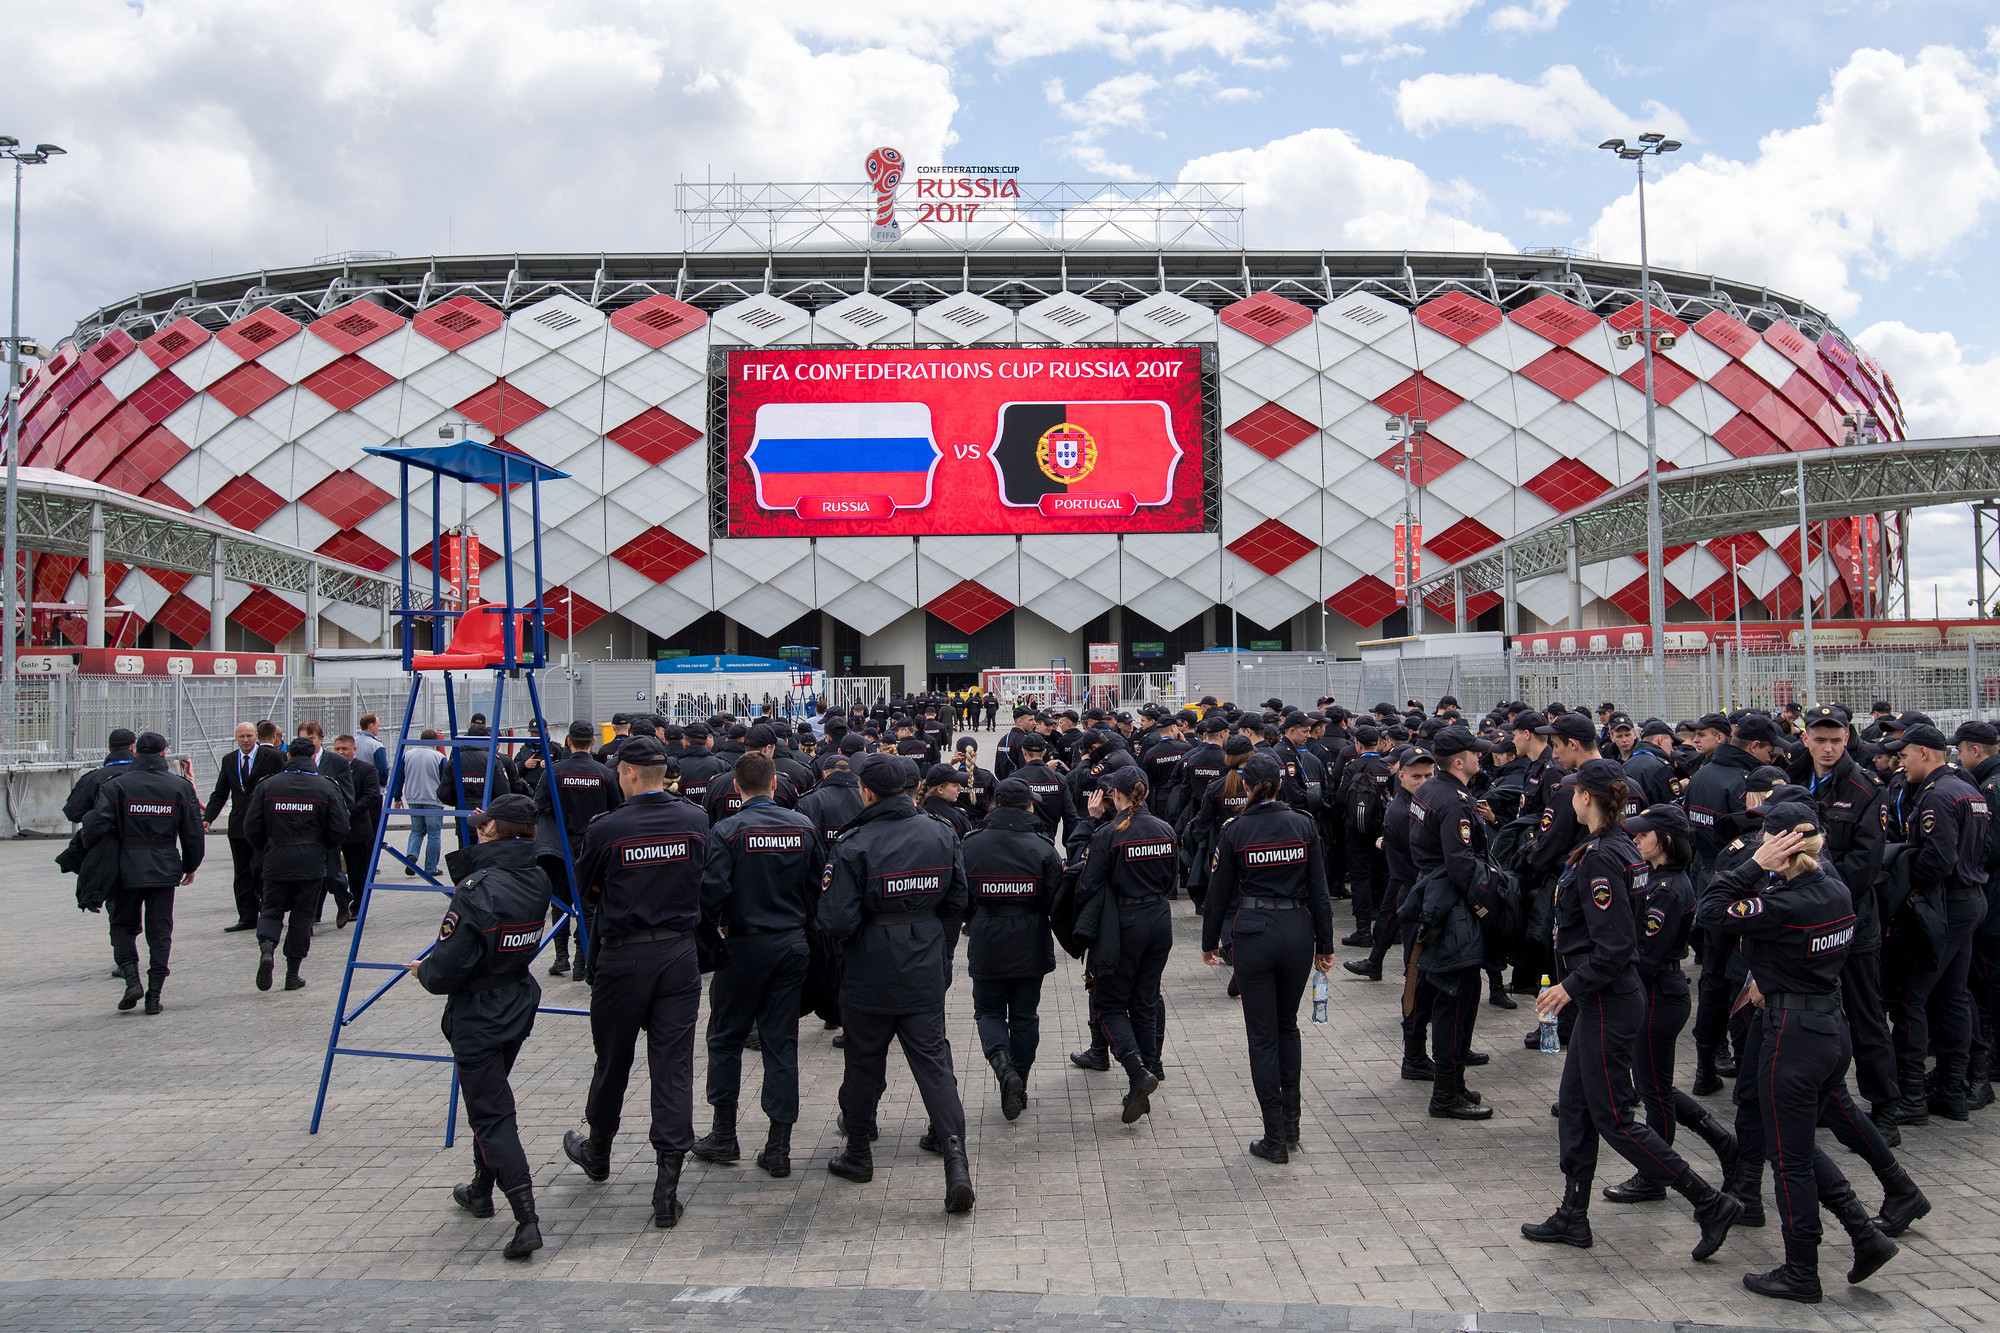 Матч: Россия &mdash; Португалия

Стадион: &laquo;Спартак&raquo;

Посещаемость: 42 759

Вместимость: 42 759

На этом матче были приняты повышенные меры безопасности
